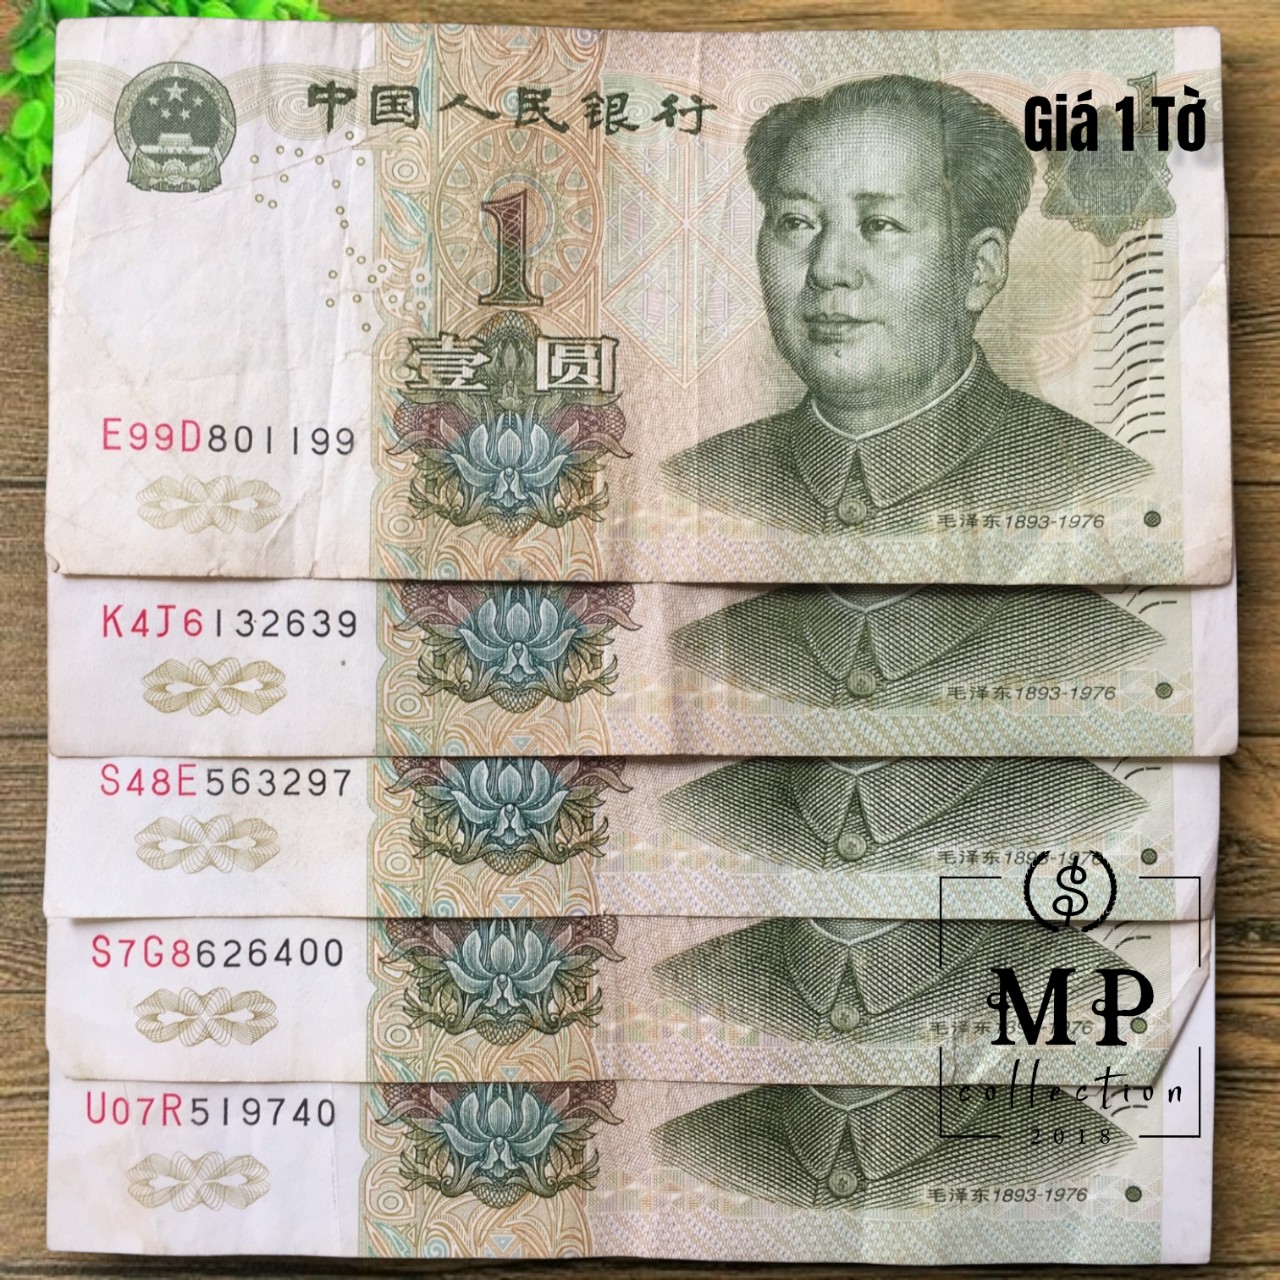 Tờ tiền xưa Trung Quốc 1 Yuan 1999 hình ông Mao Trạch Đông cũ